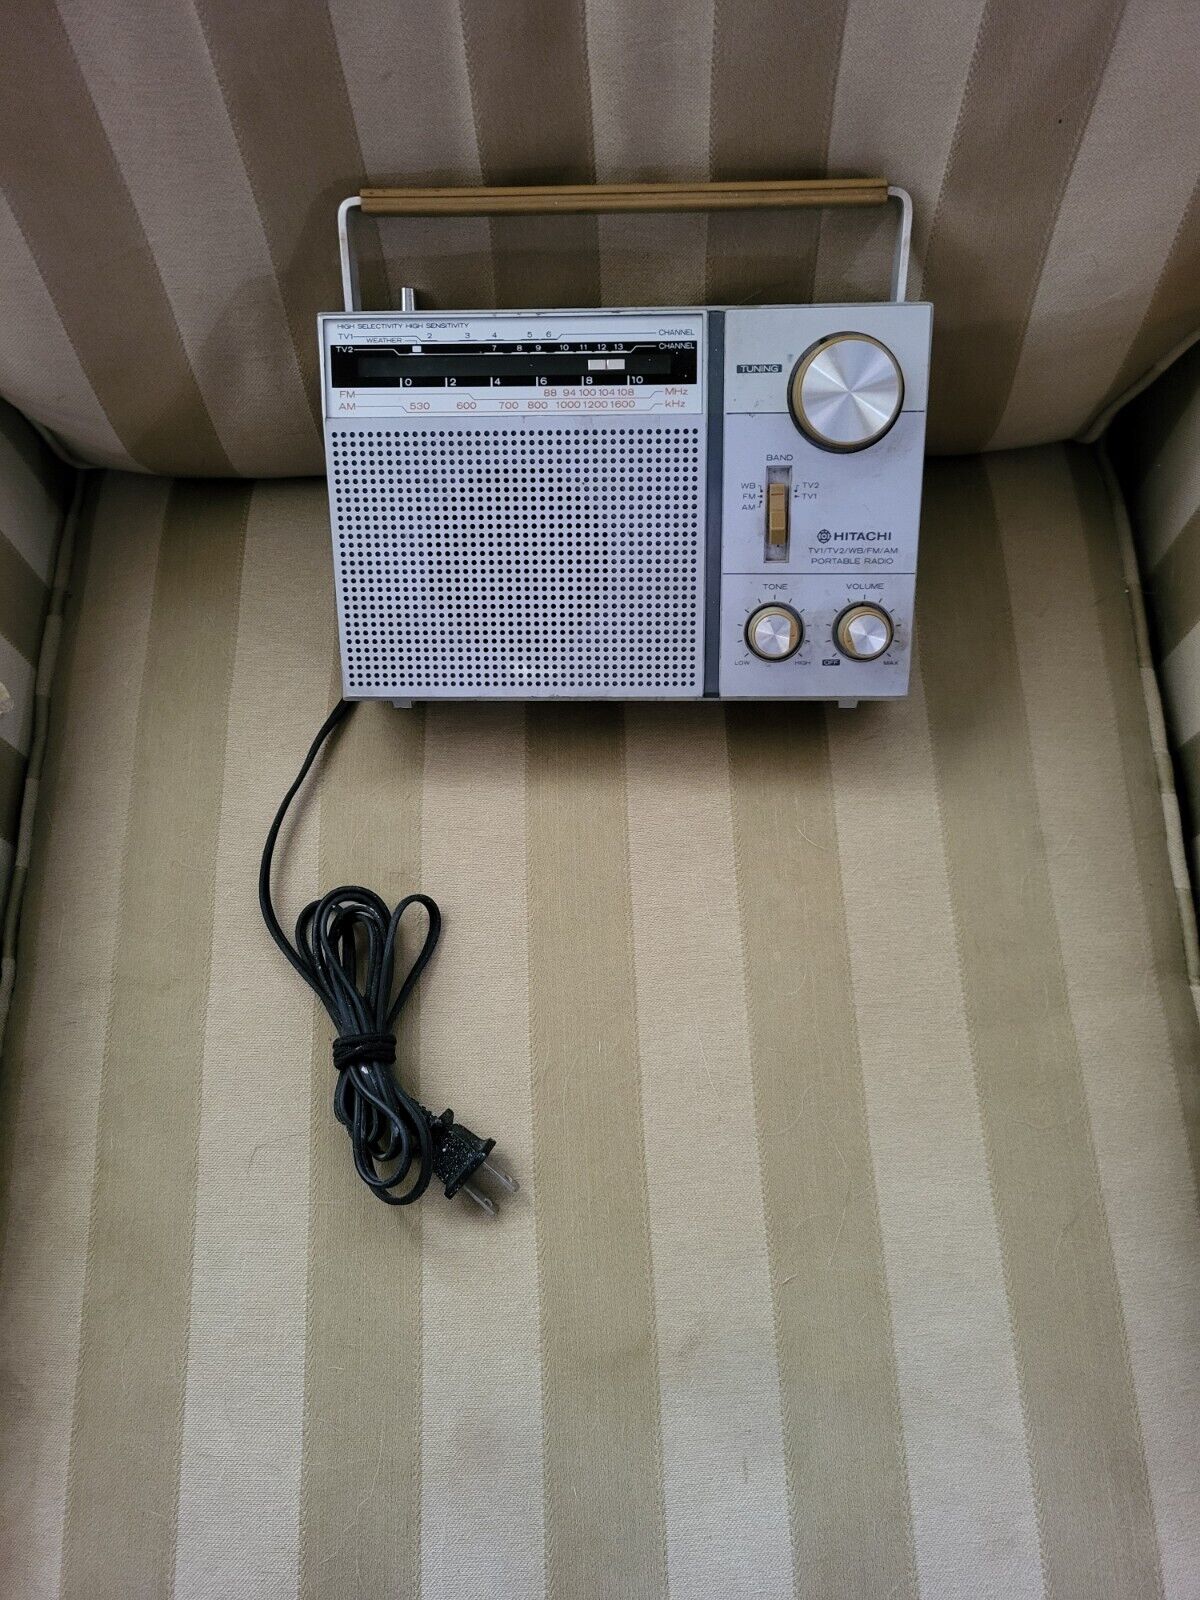 Vintage Hitachi Radio